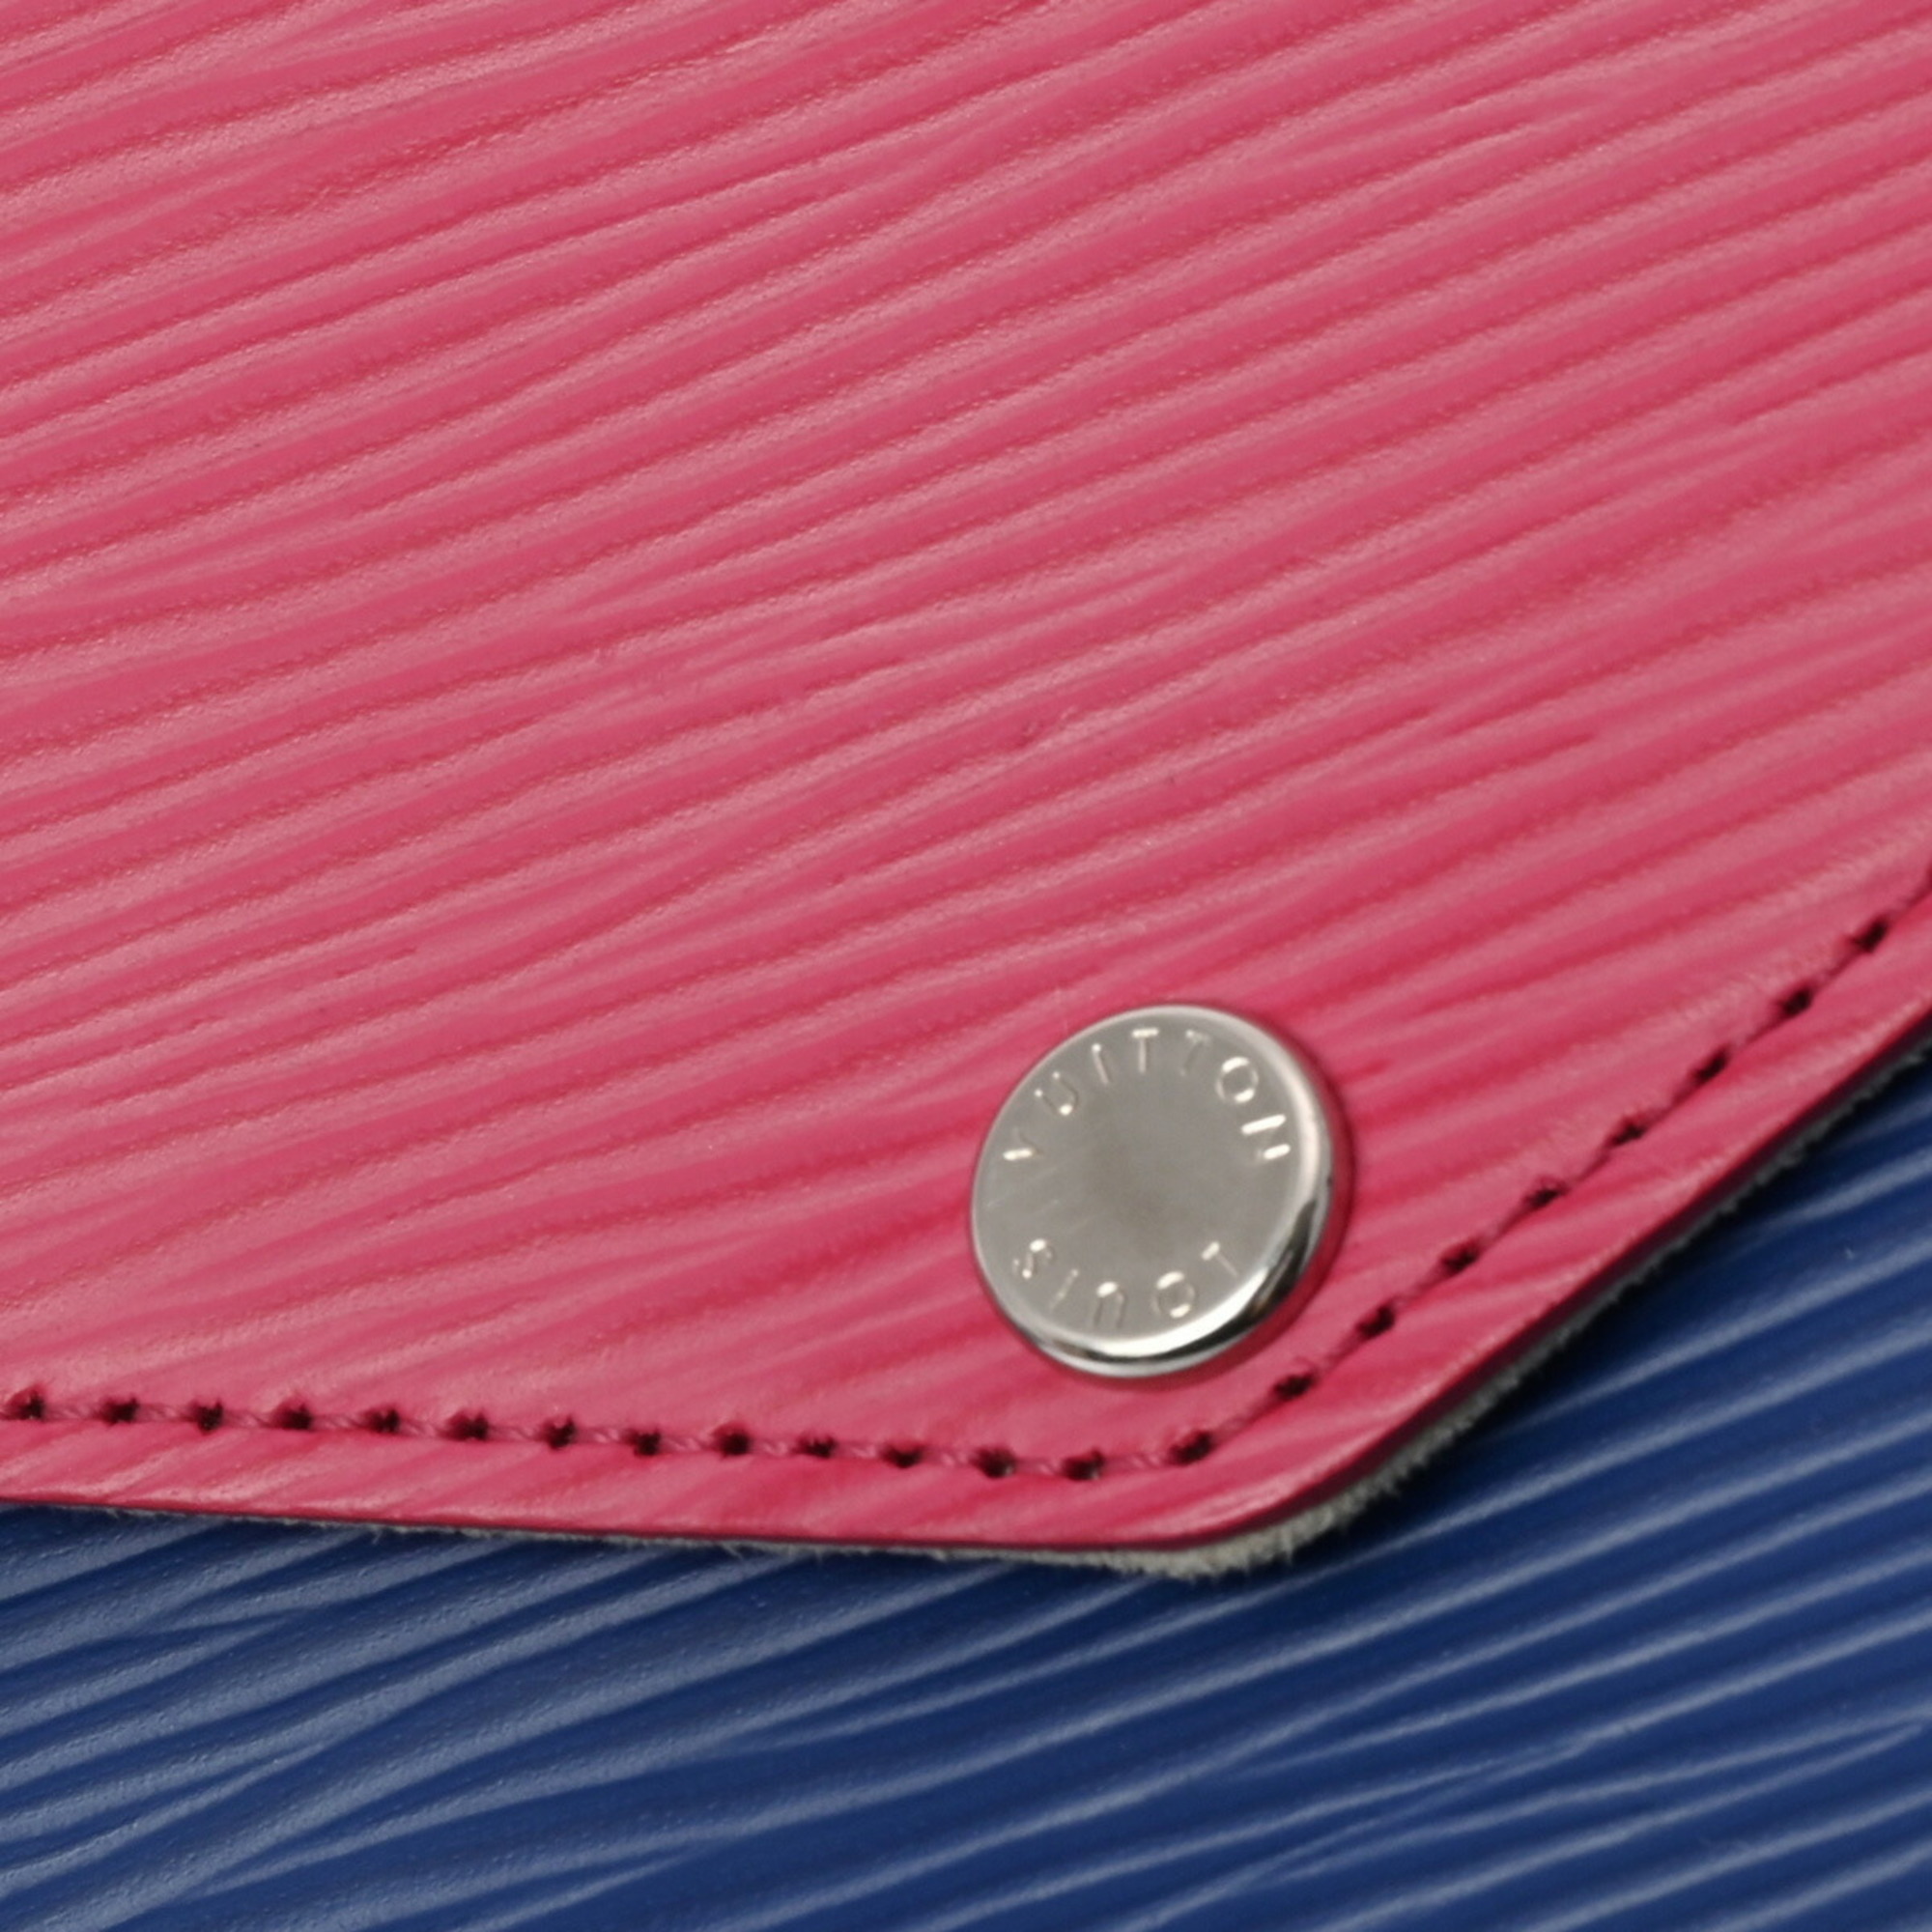 LOUIS VUITTON Epi Pochette Felicie Chain Wallet Pink/Blue/Light Pink M61754 Women's Leather Shoulder Bag